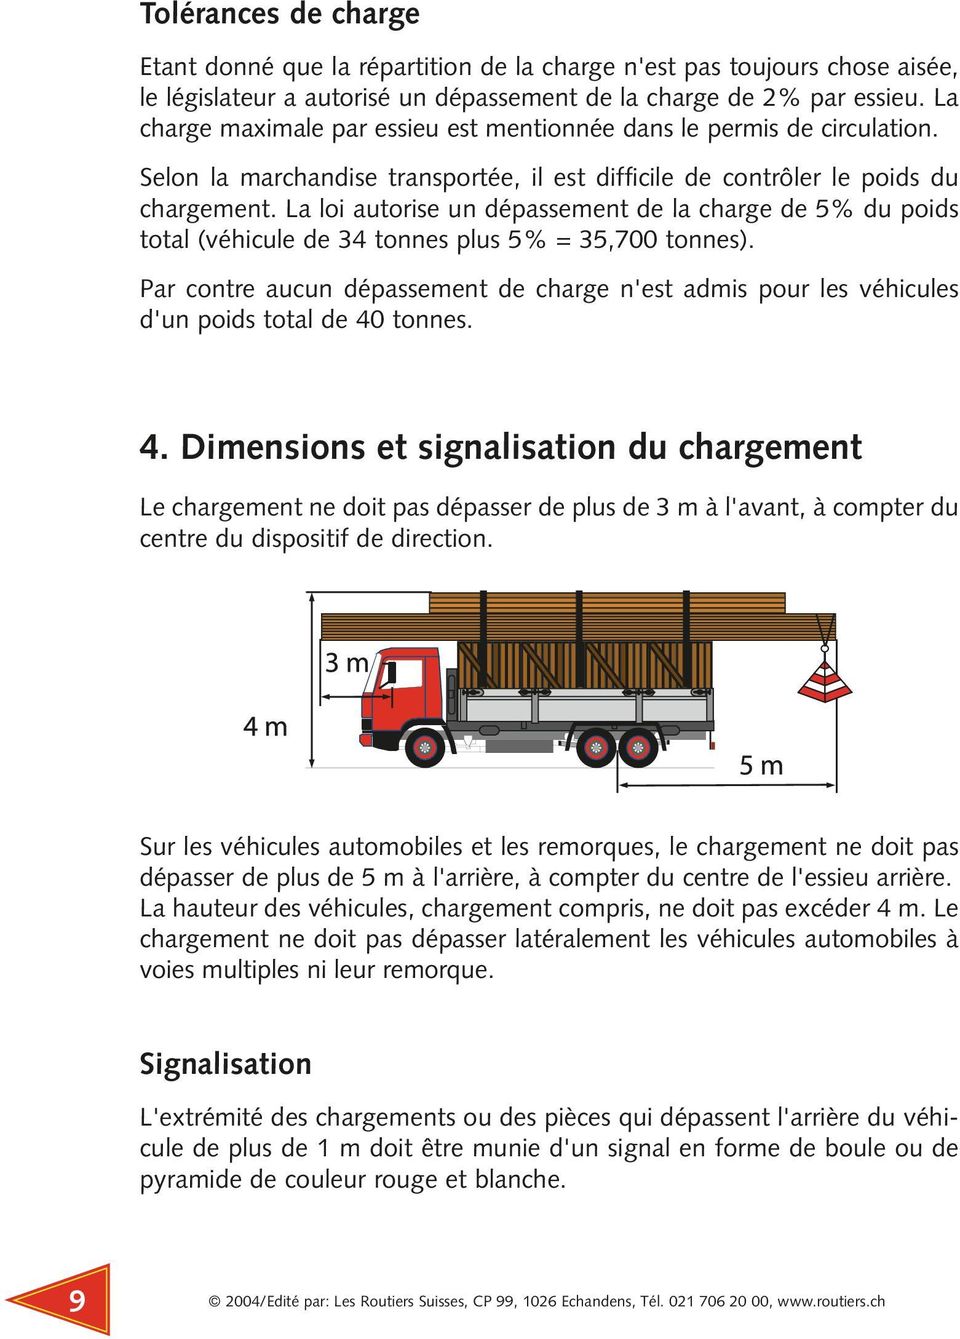 La loi autorise un dépassement de la charge de 5% du poids total (véhicule de 34 tonnes plus 5% = 35,700 tonnes).